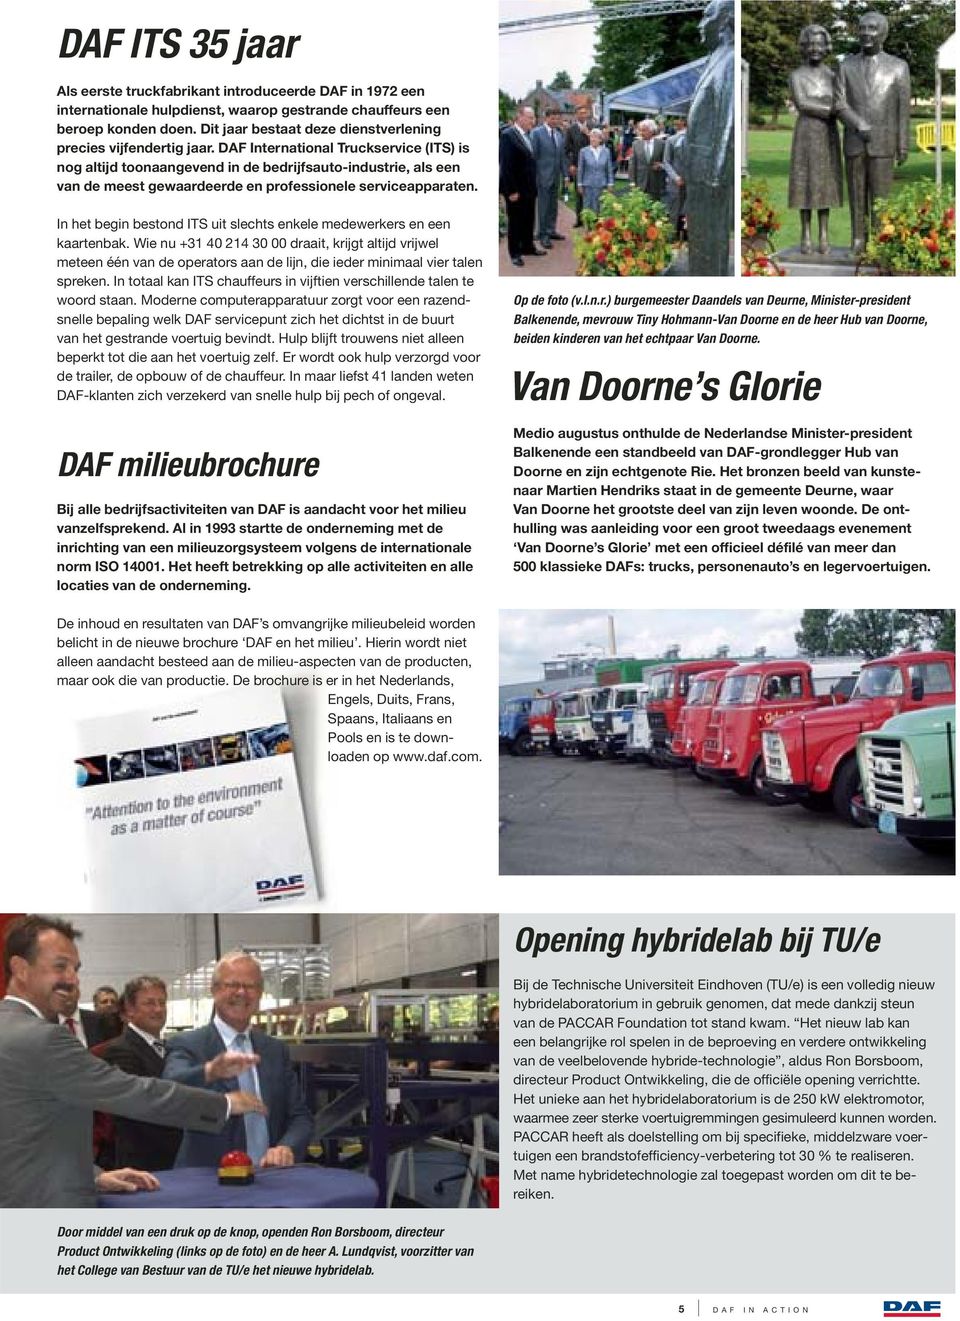 DAF International Truckservice (ITS) is nog altijd toonaangevend in de bedrijfsauto-industrie, als een van de meest gewaardeerde en professionele serviceapparaten.